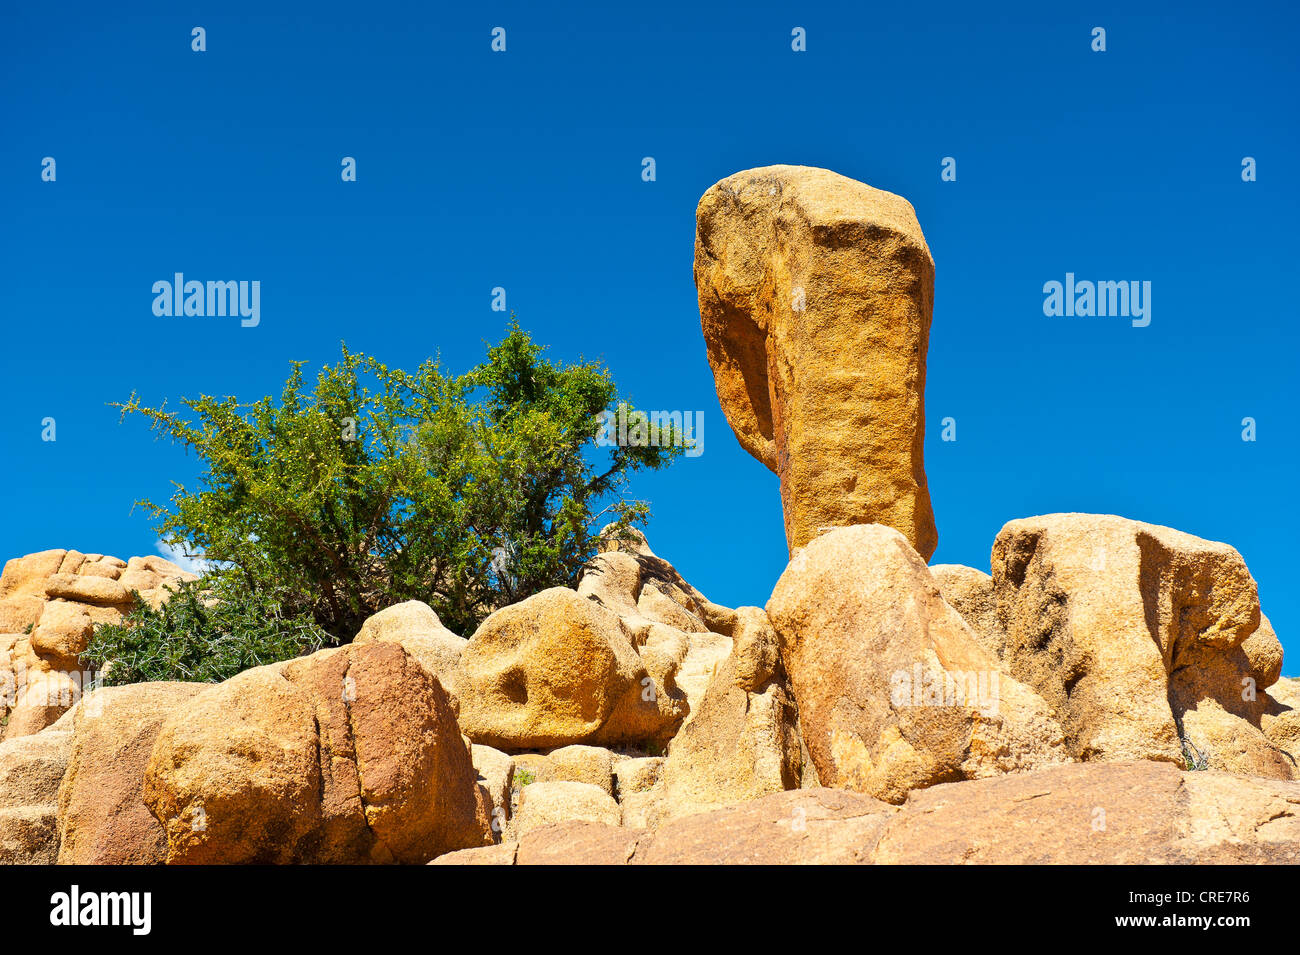 Massi di granito che giace su di un promontorio roccioso, con giovani (Argan Argania spinosa) alberi che crescono tra le rocce Foto Stock